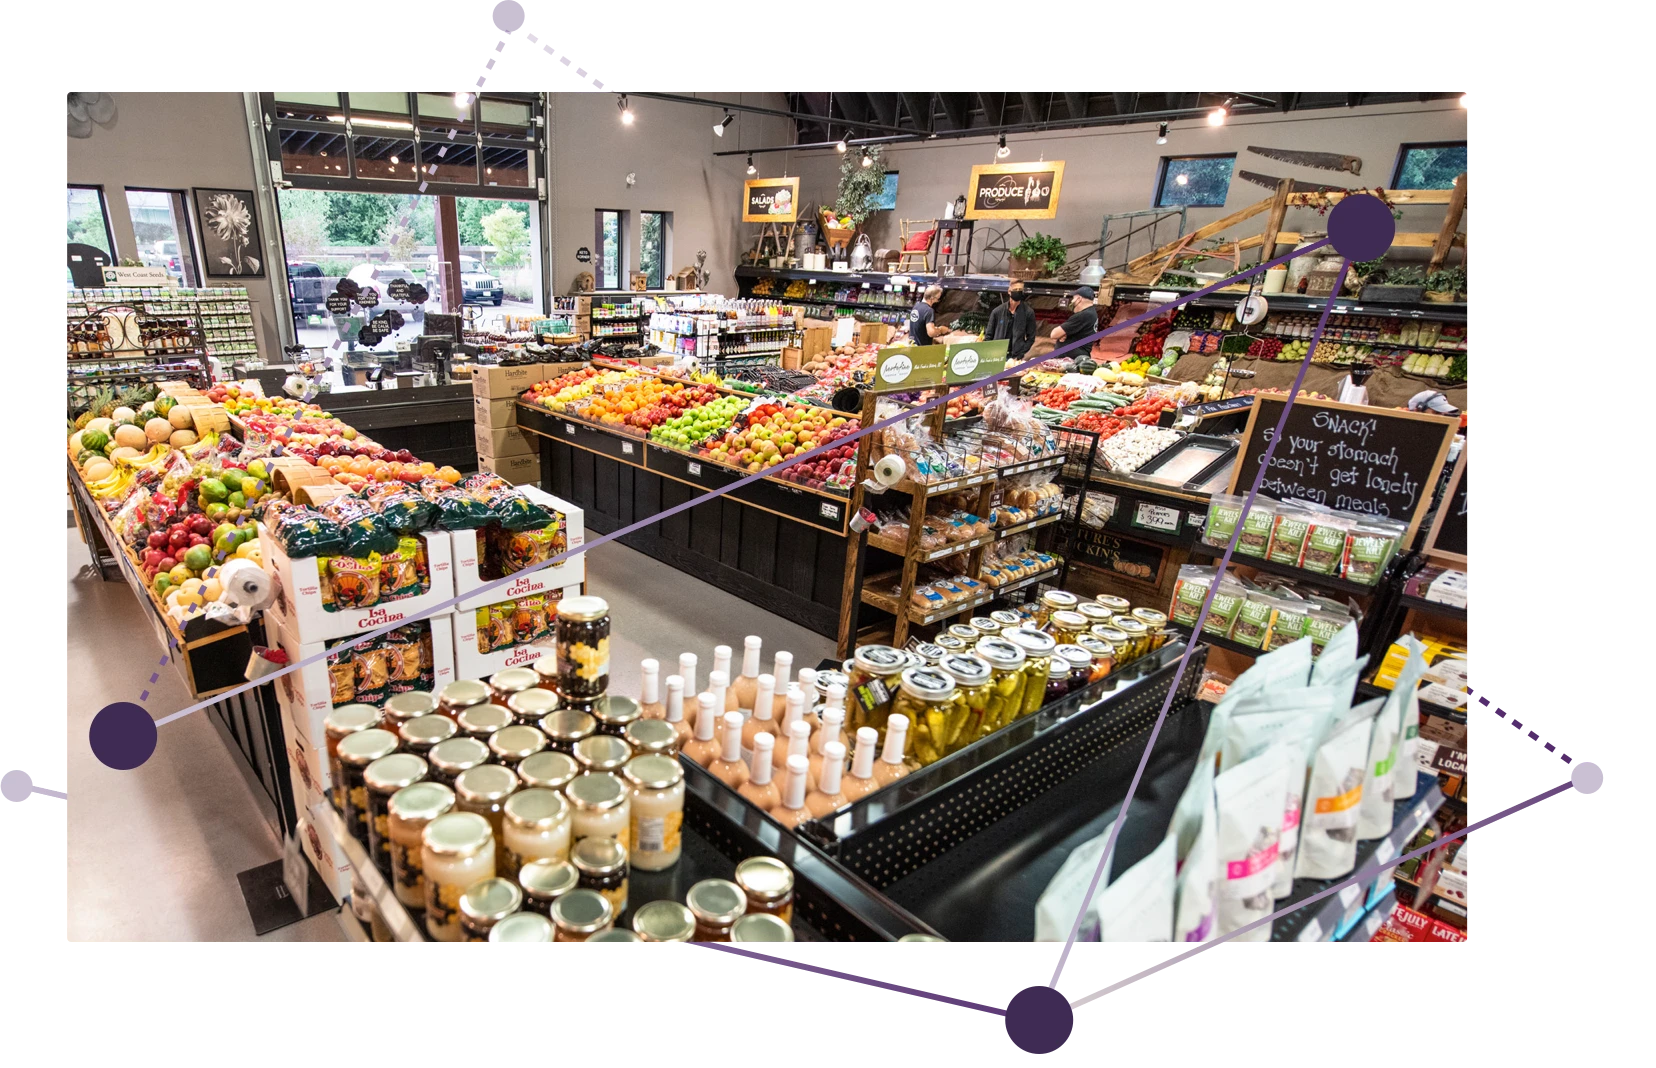 Une image d’une épicerie où il y a beaucoup de fruits et légumes.